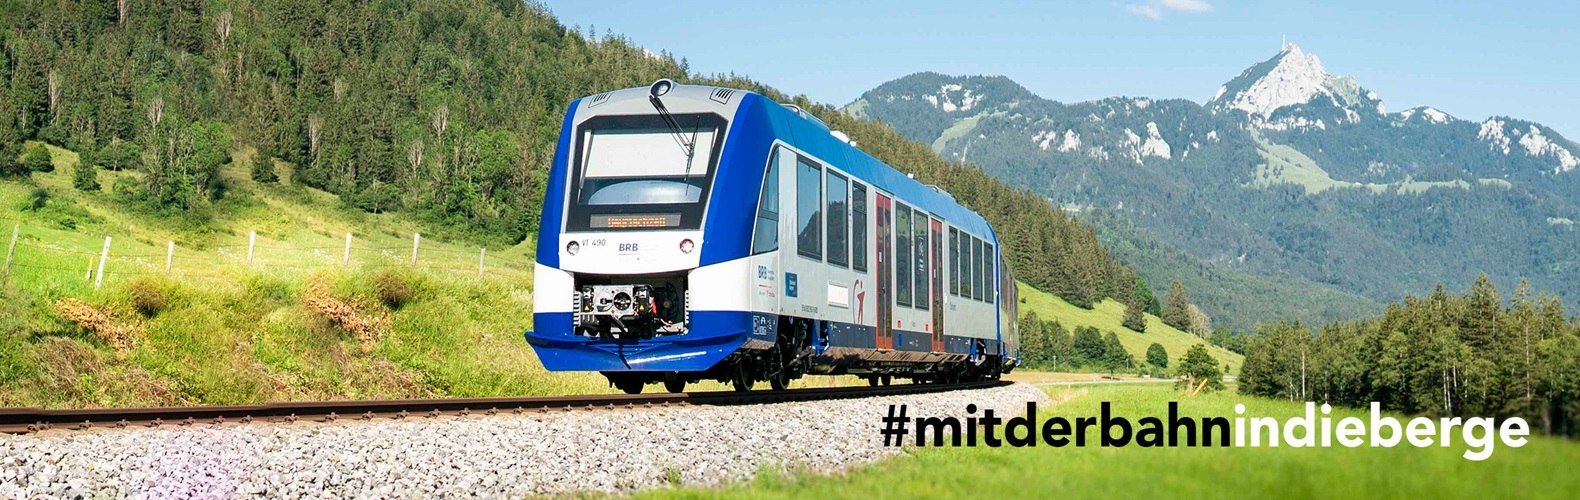 #mitderbahnindieberge, © Regionalentwicklung Oberland